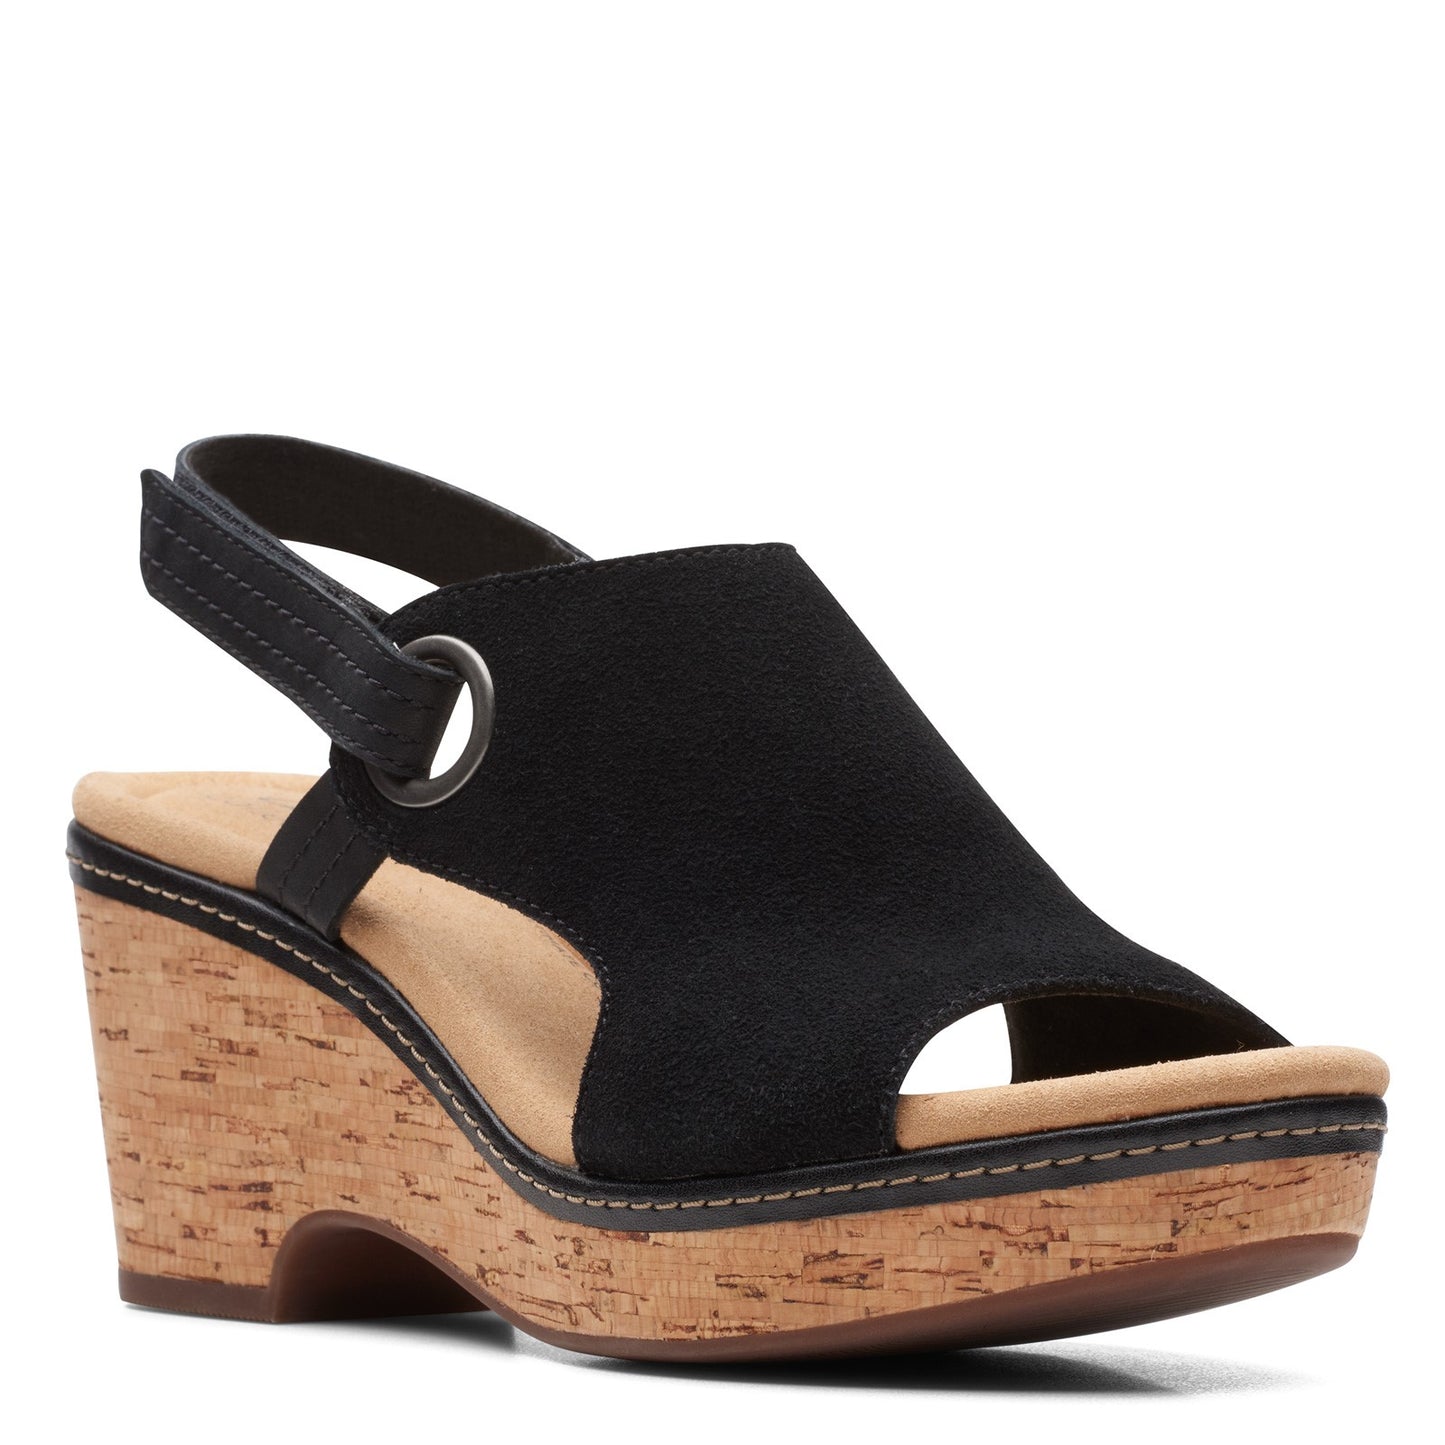 Peltz Shoes  Women's Clarks Giselle Sea Sandal BLACK SUEDE 26164789